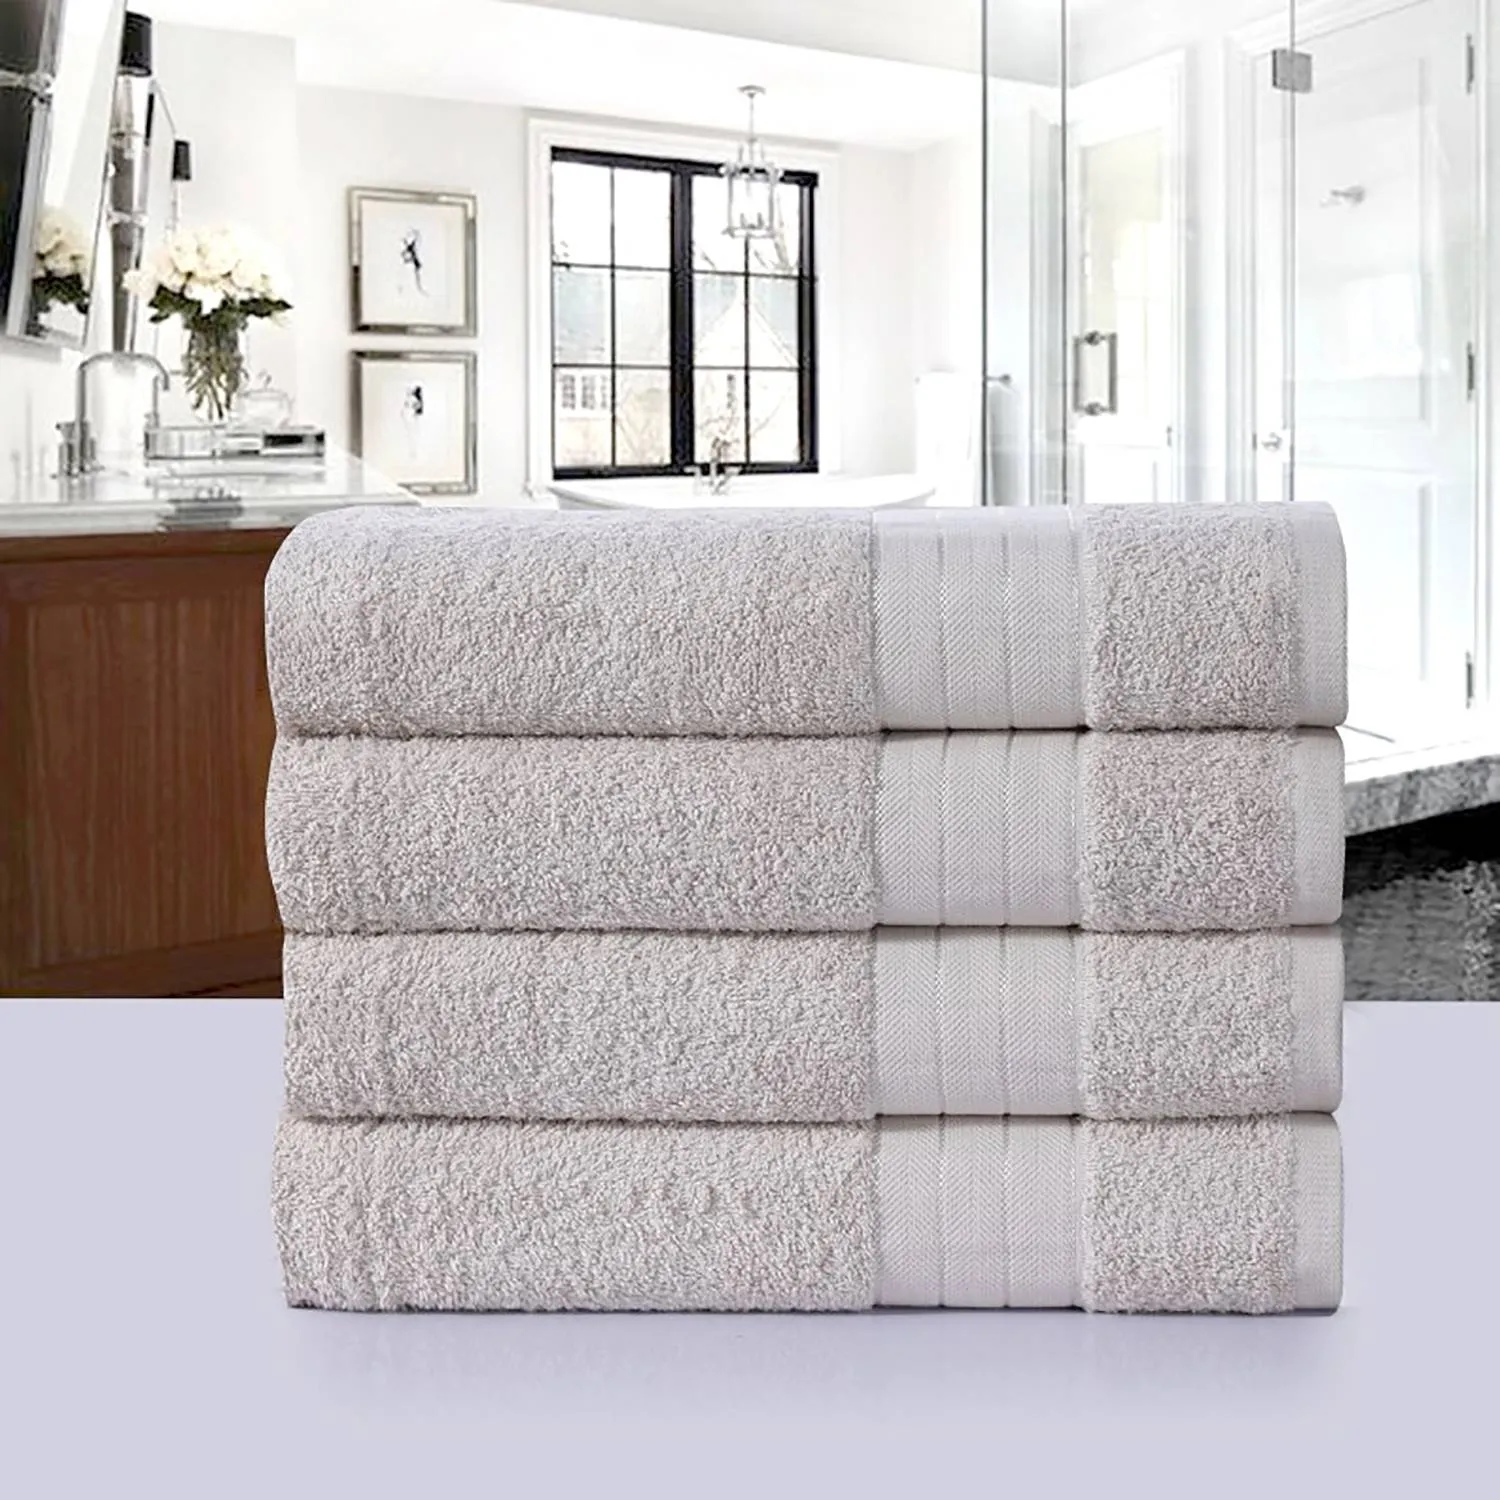 Set di asciugamani Branda (4), 